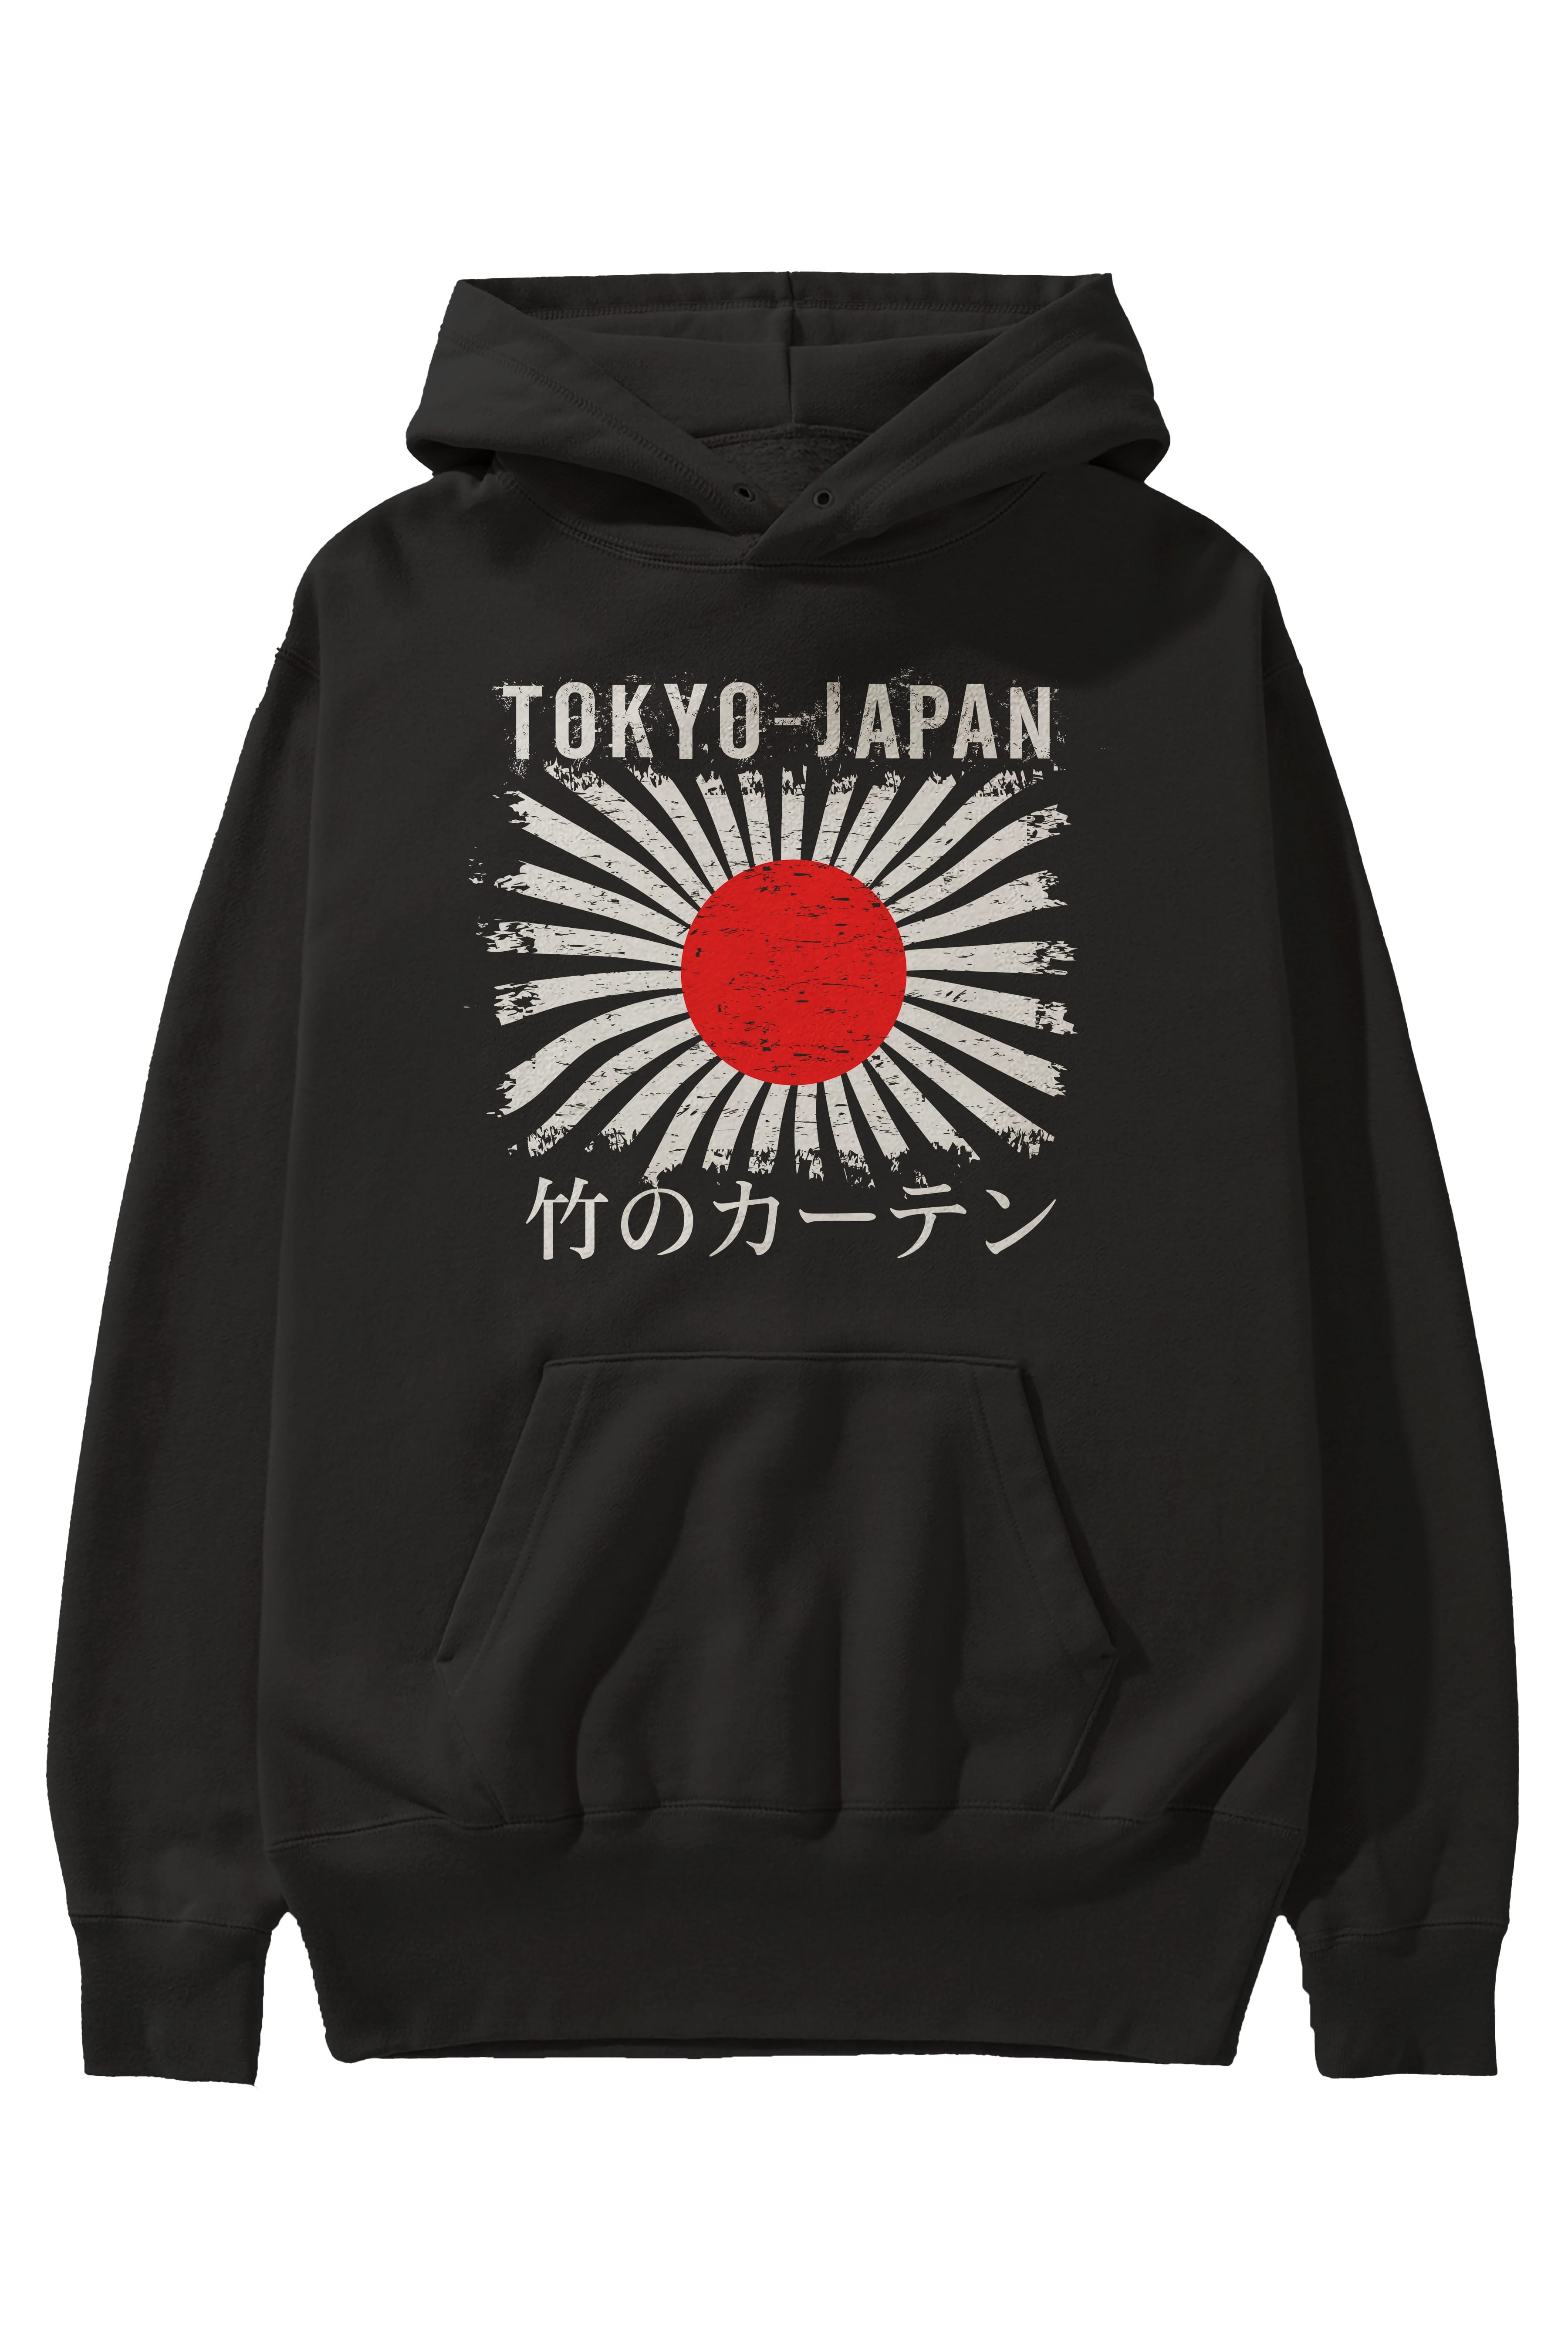 Tokyo Japan Ön Baskılı Oversize Hoodie Kapüşonlu Sweatshirt Erkek Kadın Unisex